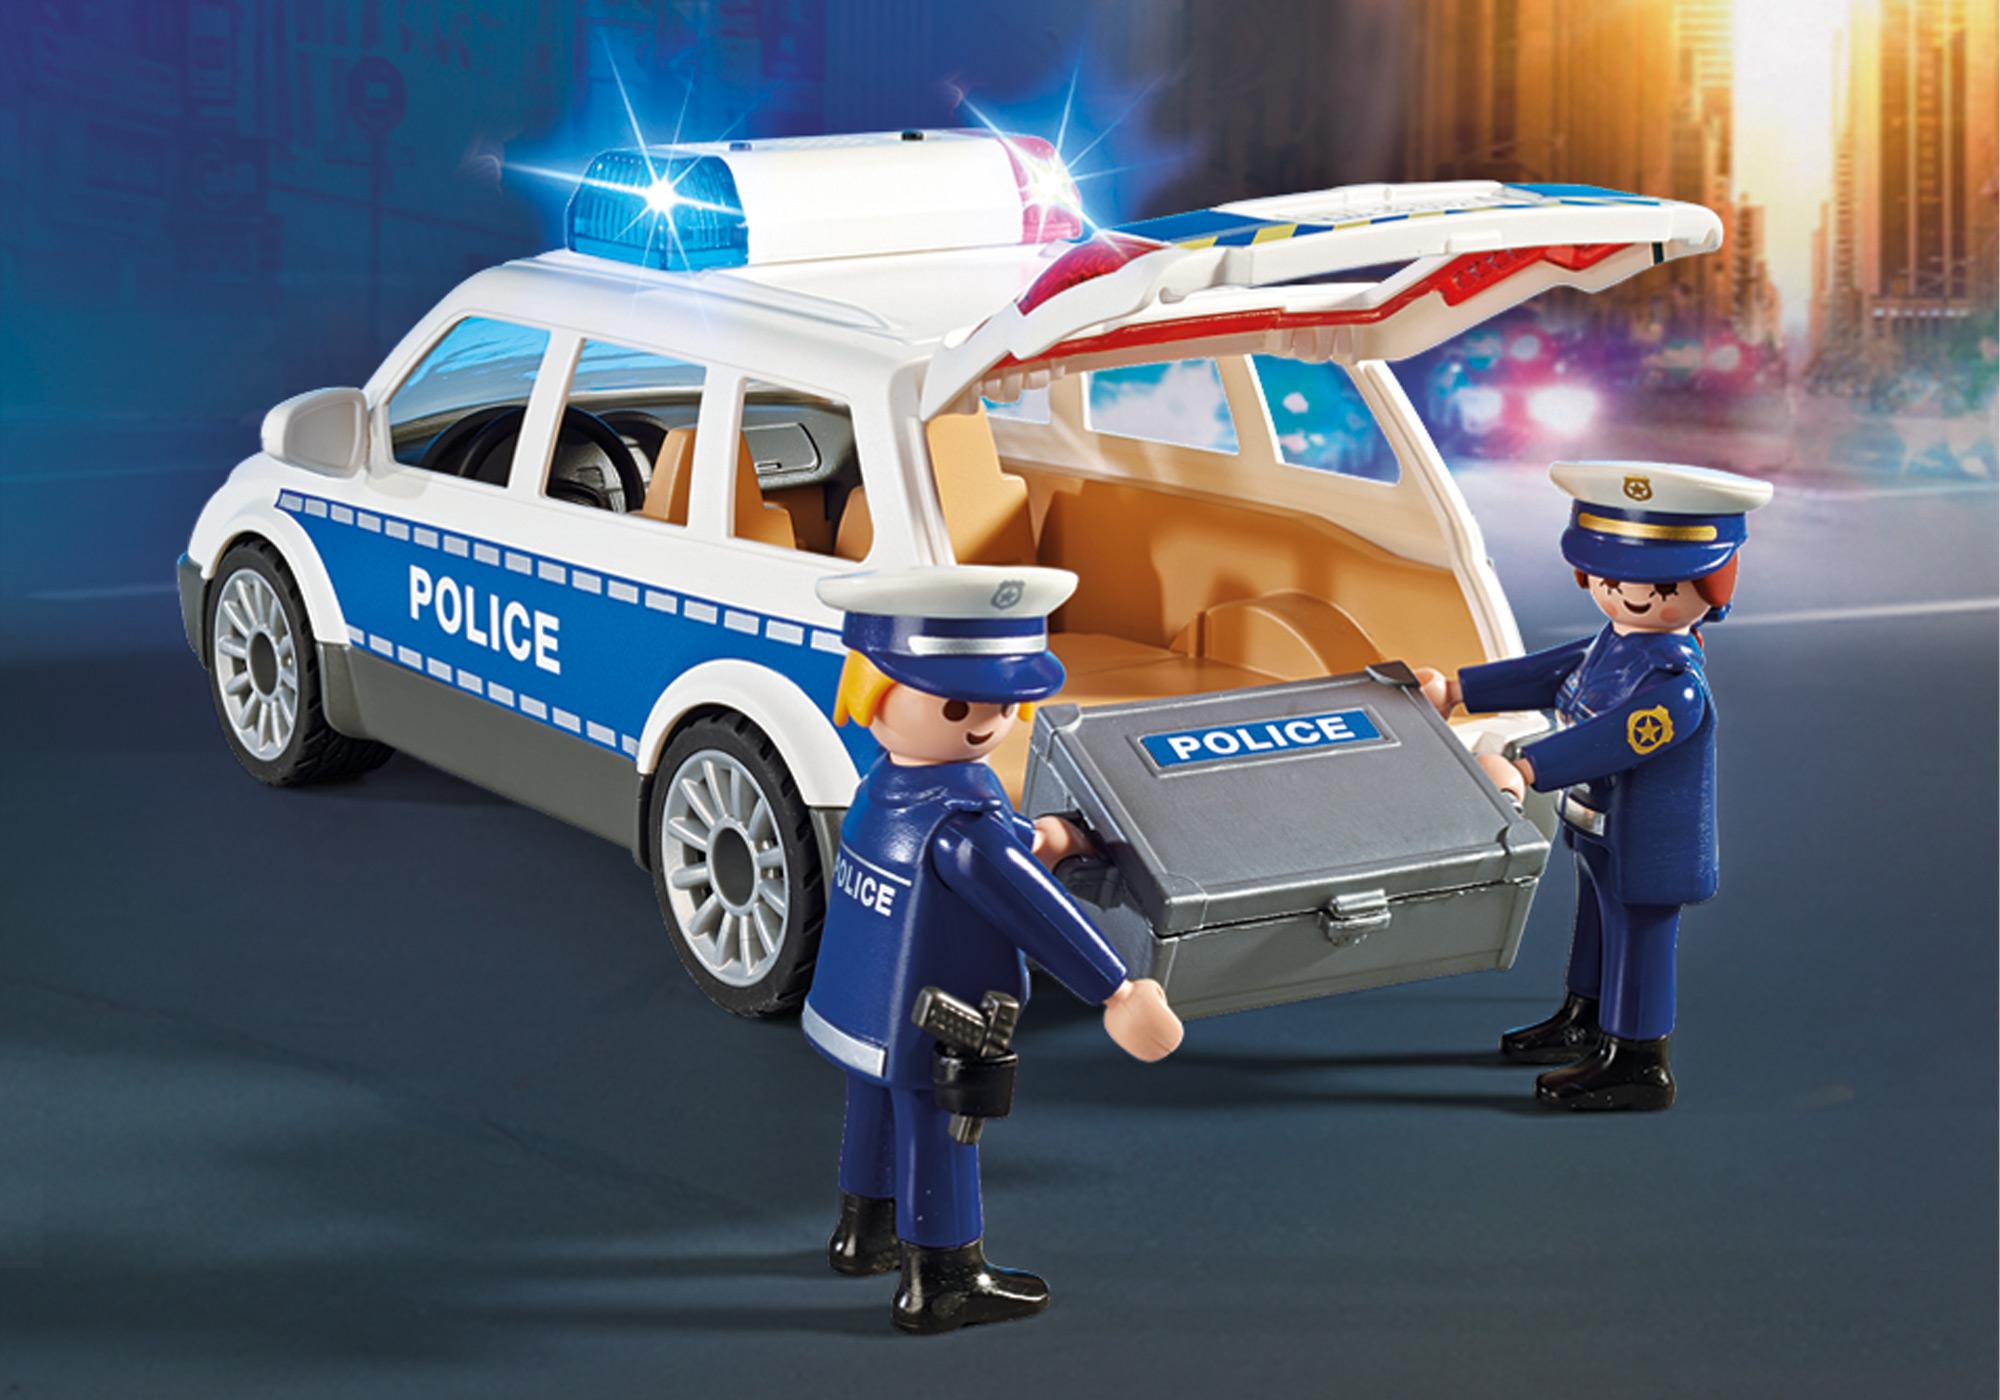 PLAYMOBIL 6920 - City Action - Voiture de policiers avec sirène pas cher 